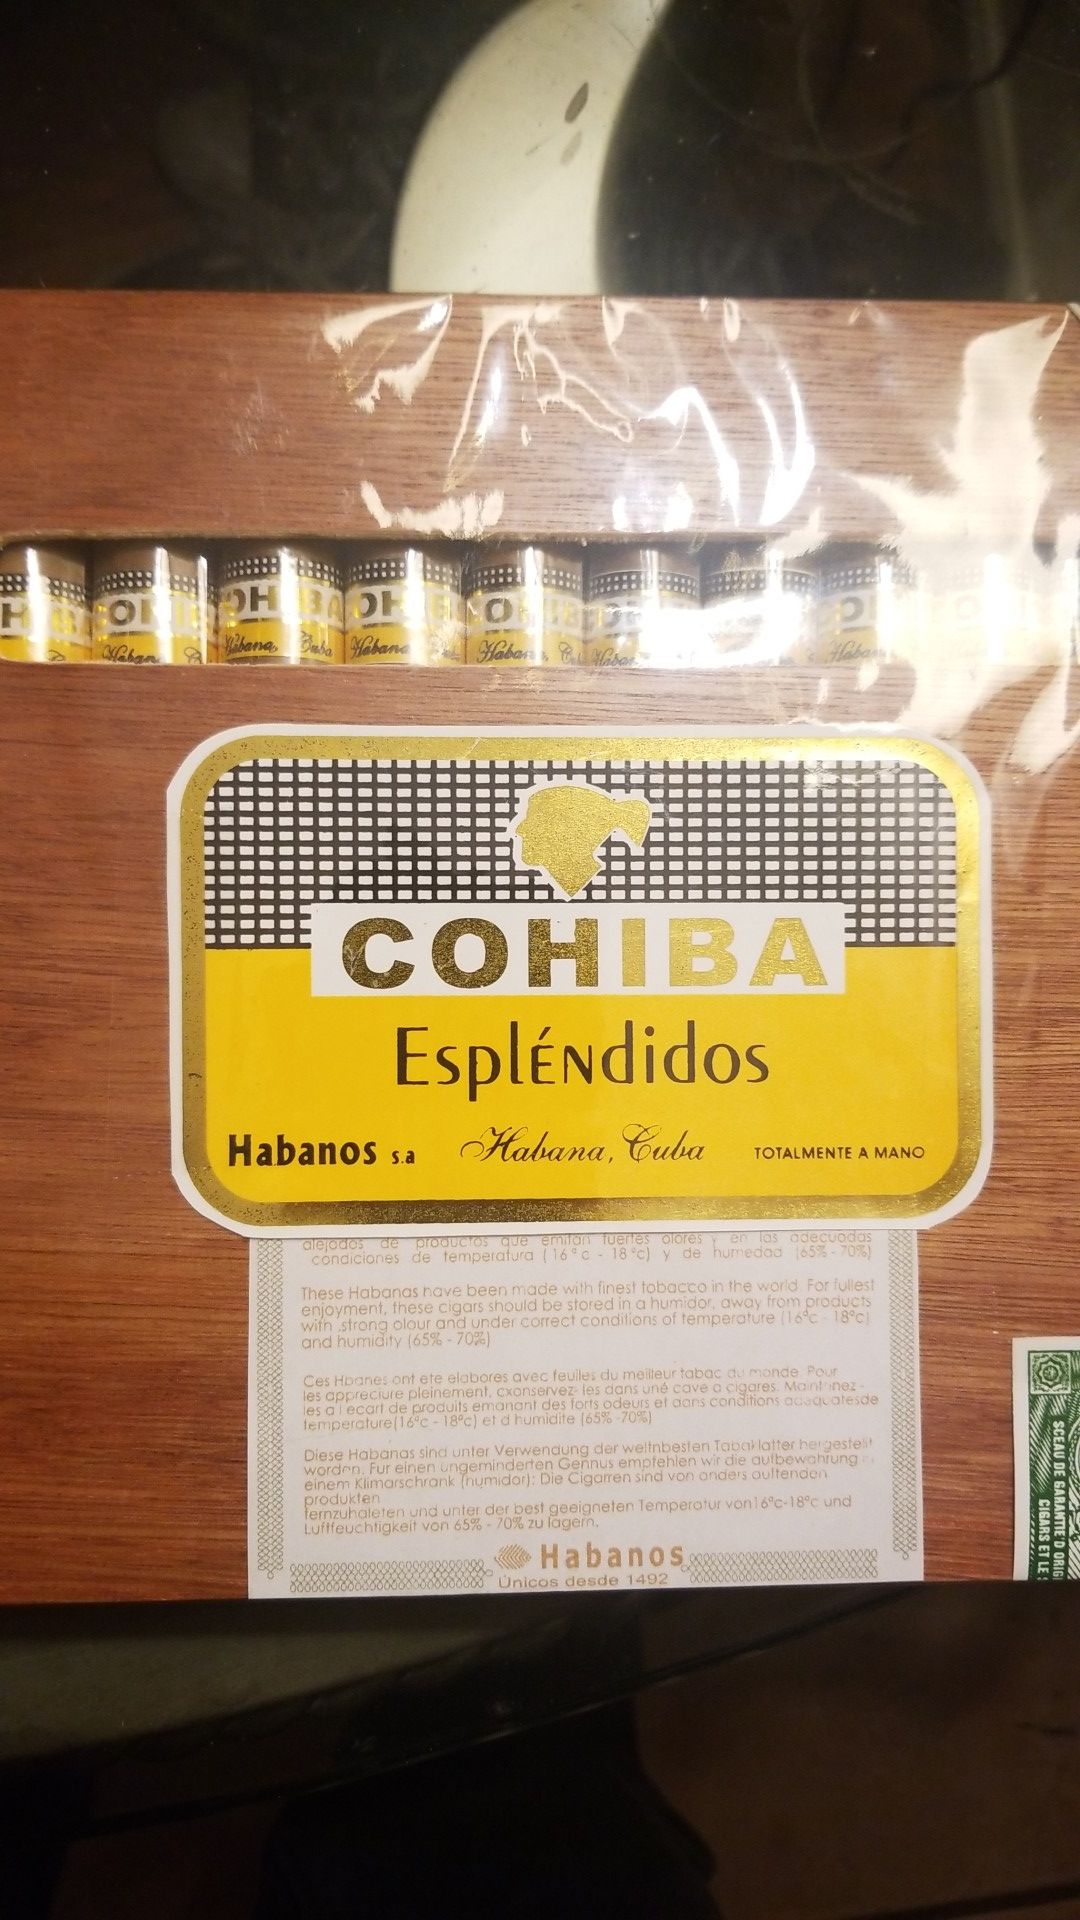 Cohiba new in box